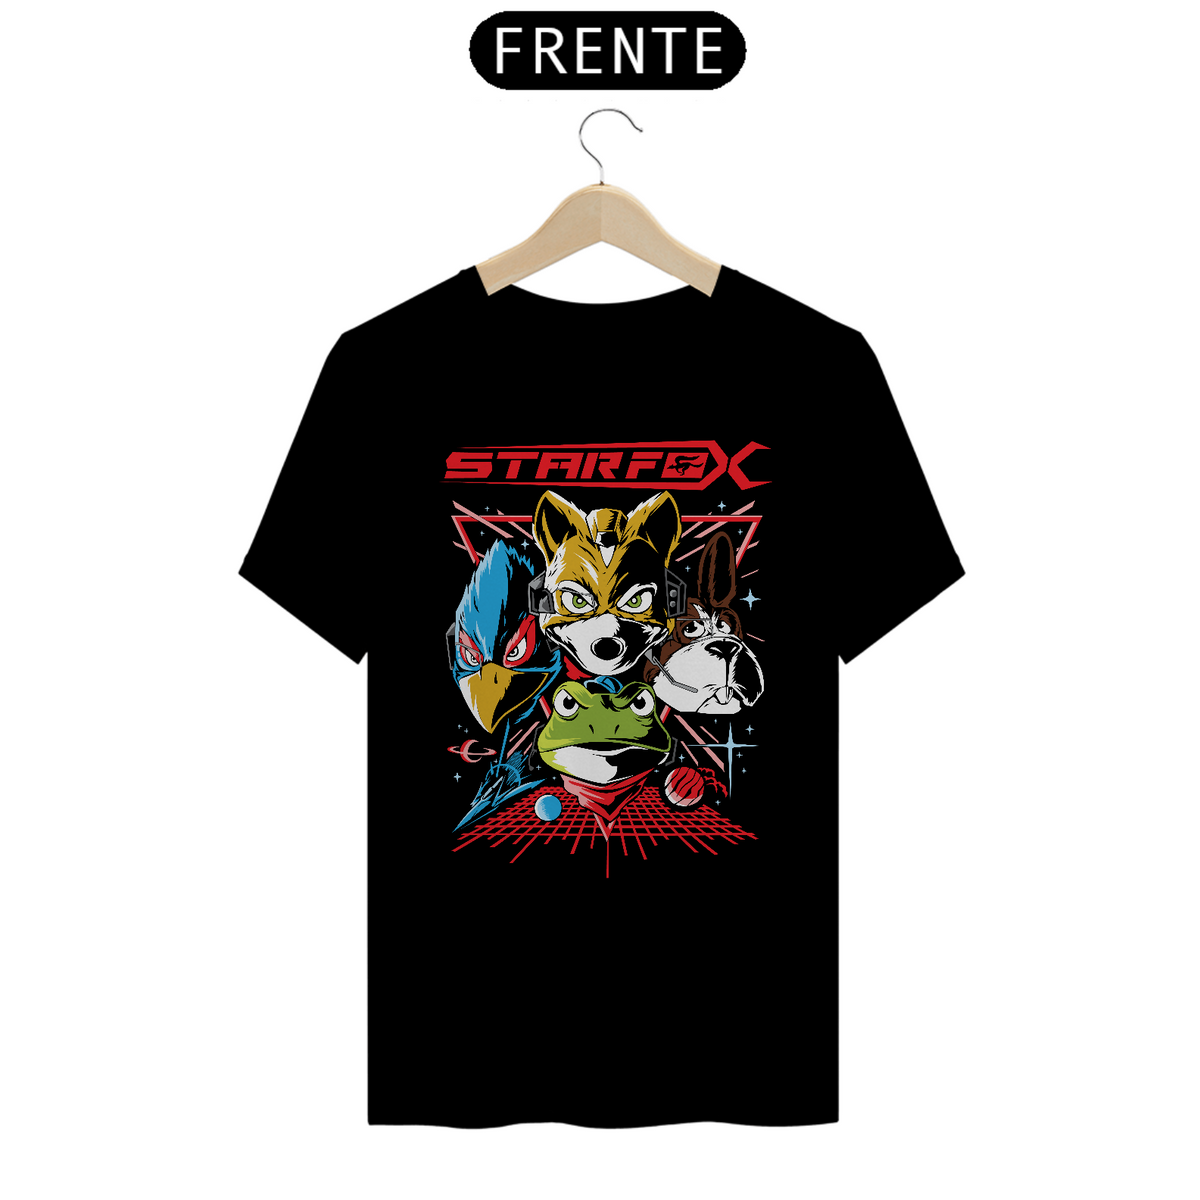 Nome do produto: Camiseta Star Fox 